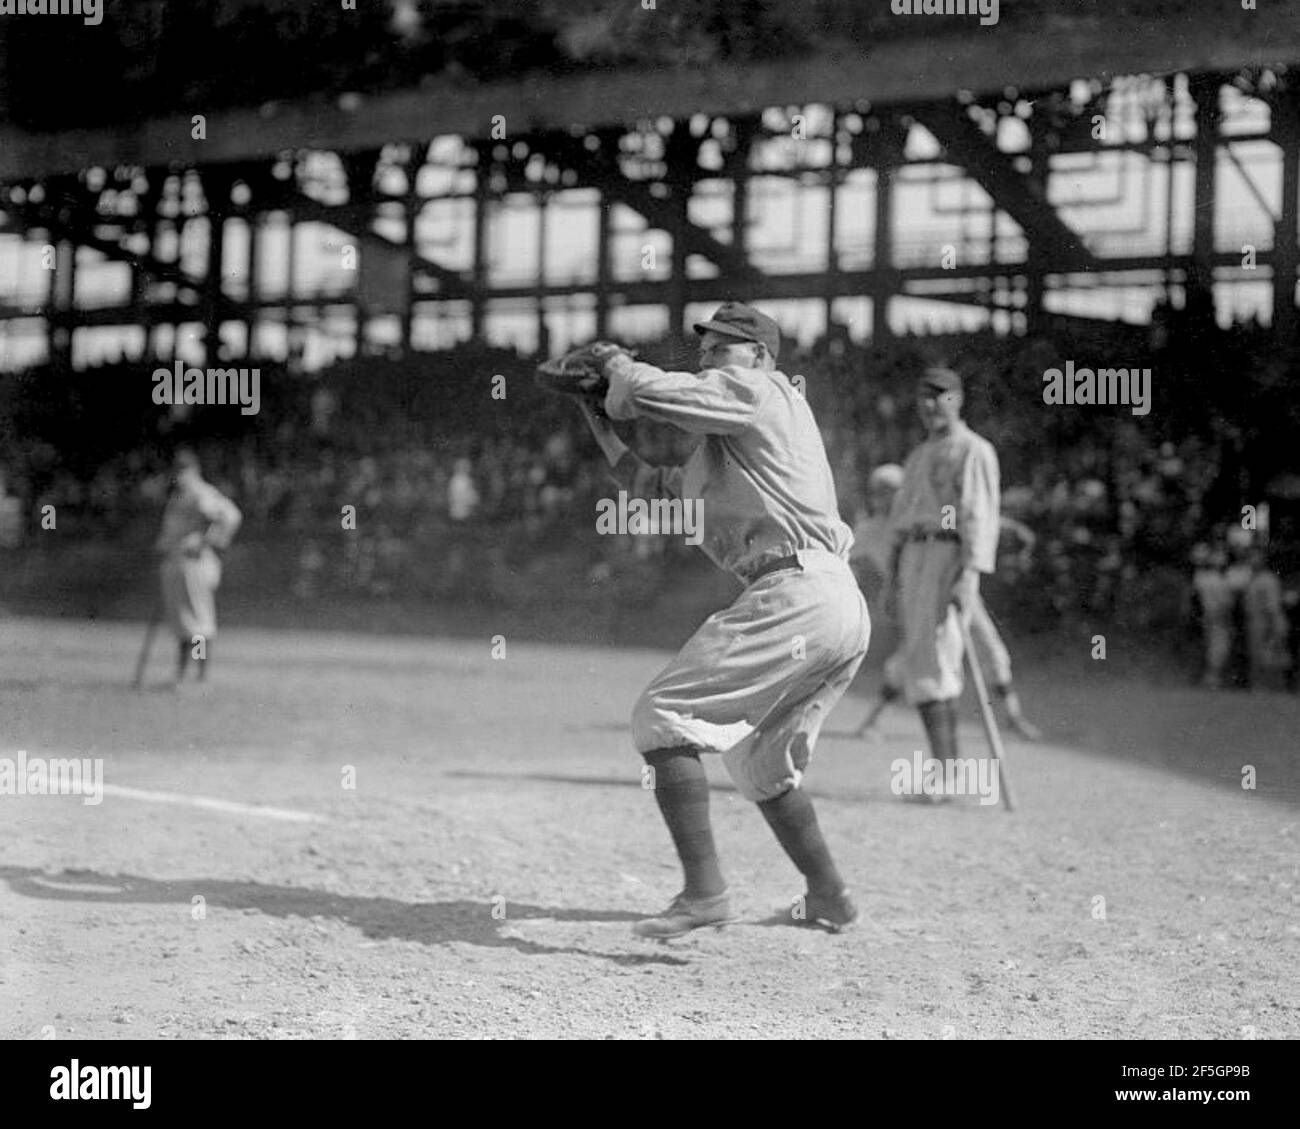 Dolf Luque, Cincinnati Reds, 1919 Stock Photo - Alamy